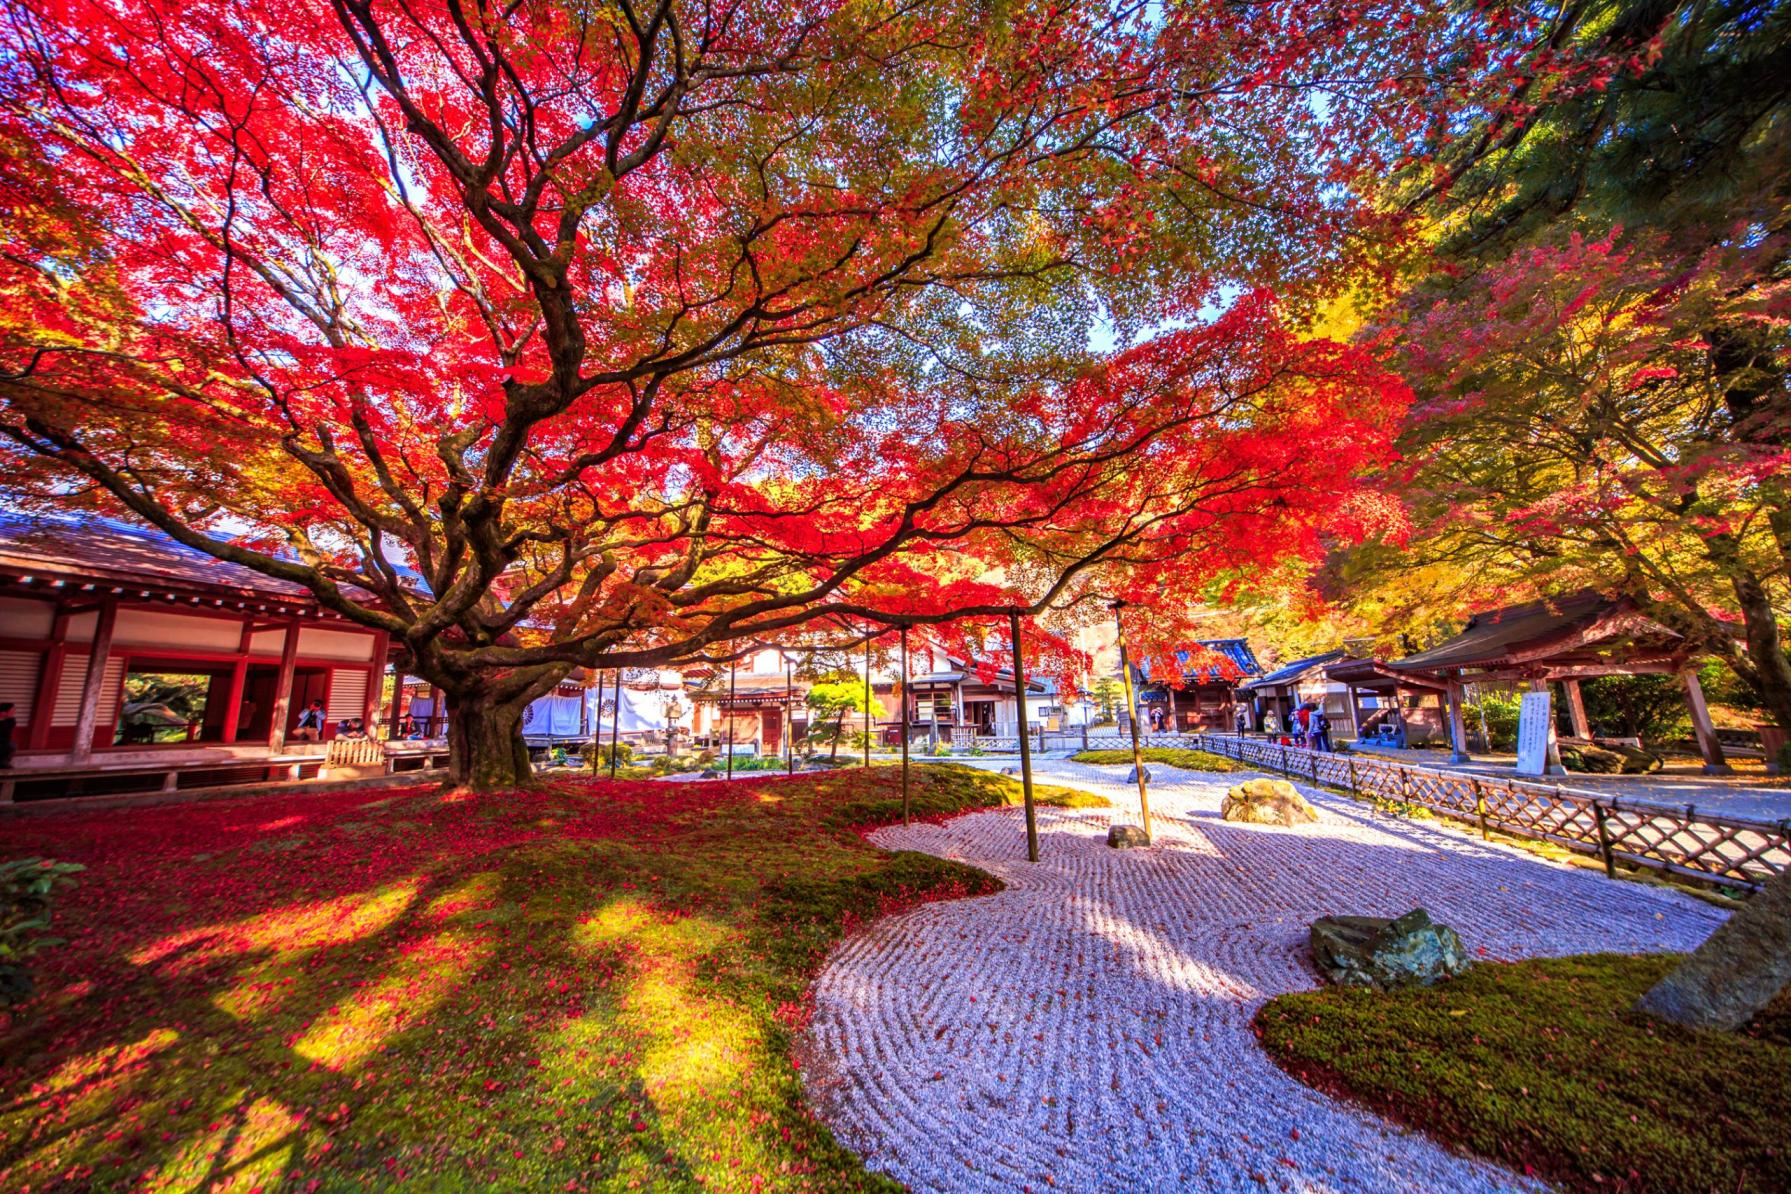 The 400-Year-Old Maple Tree, Autumn Leaves, and Garden of Raizan Sennyoji Daihioin Temple-0